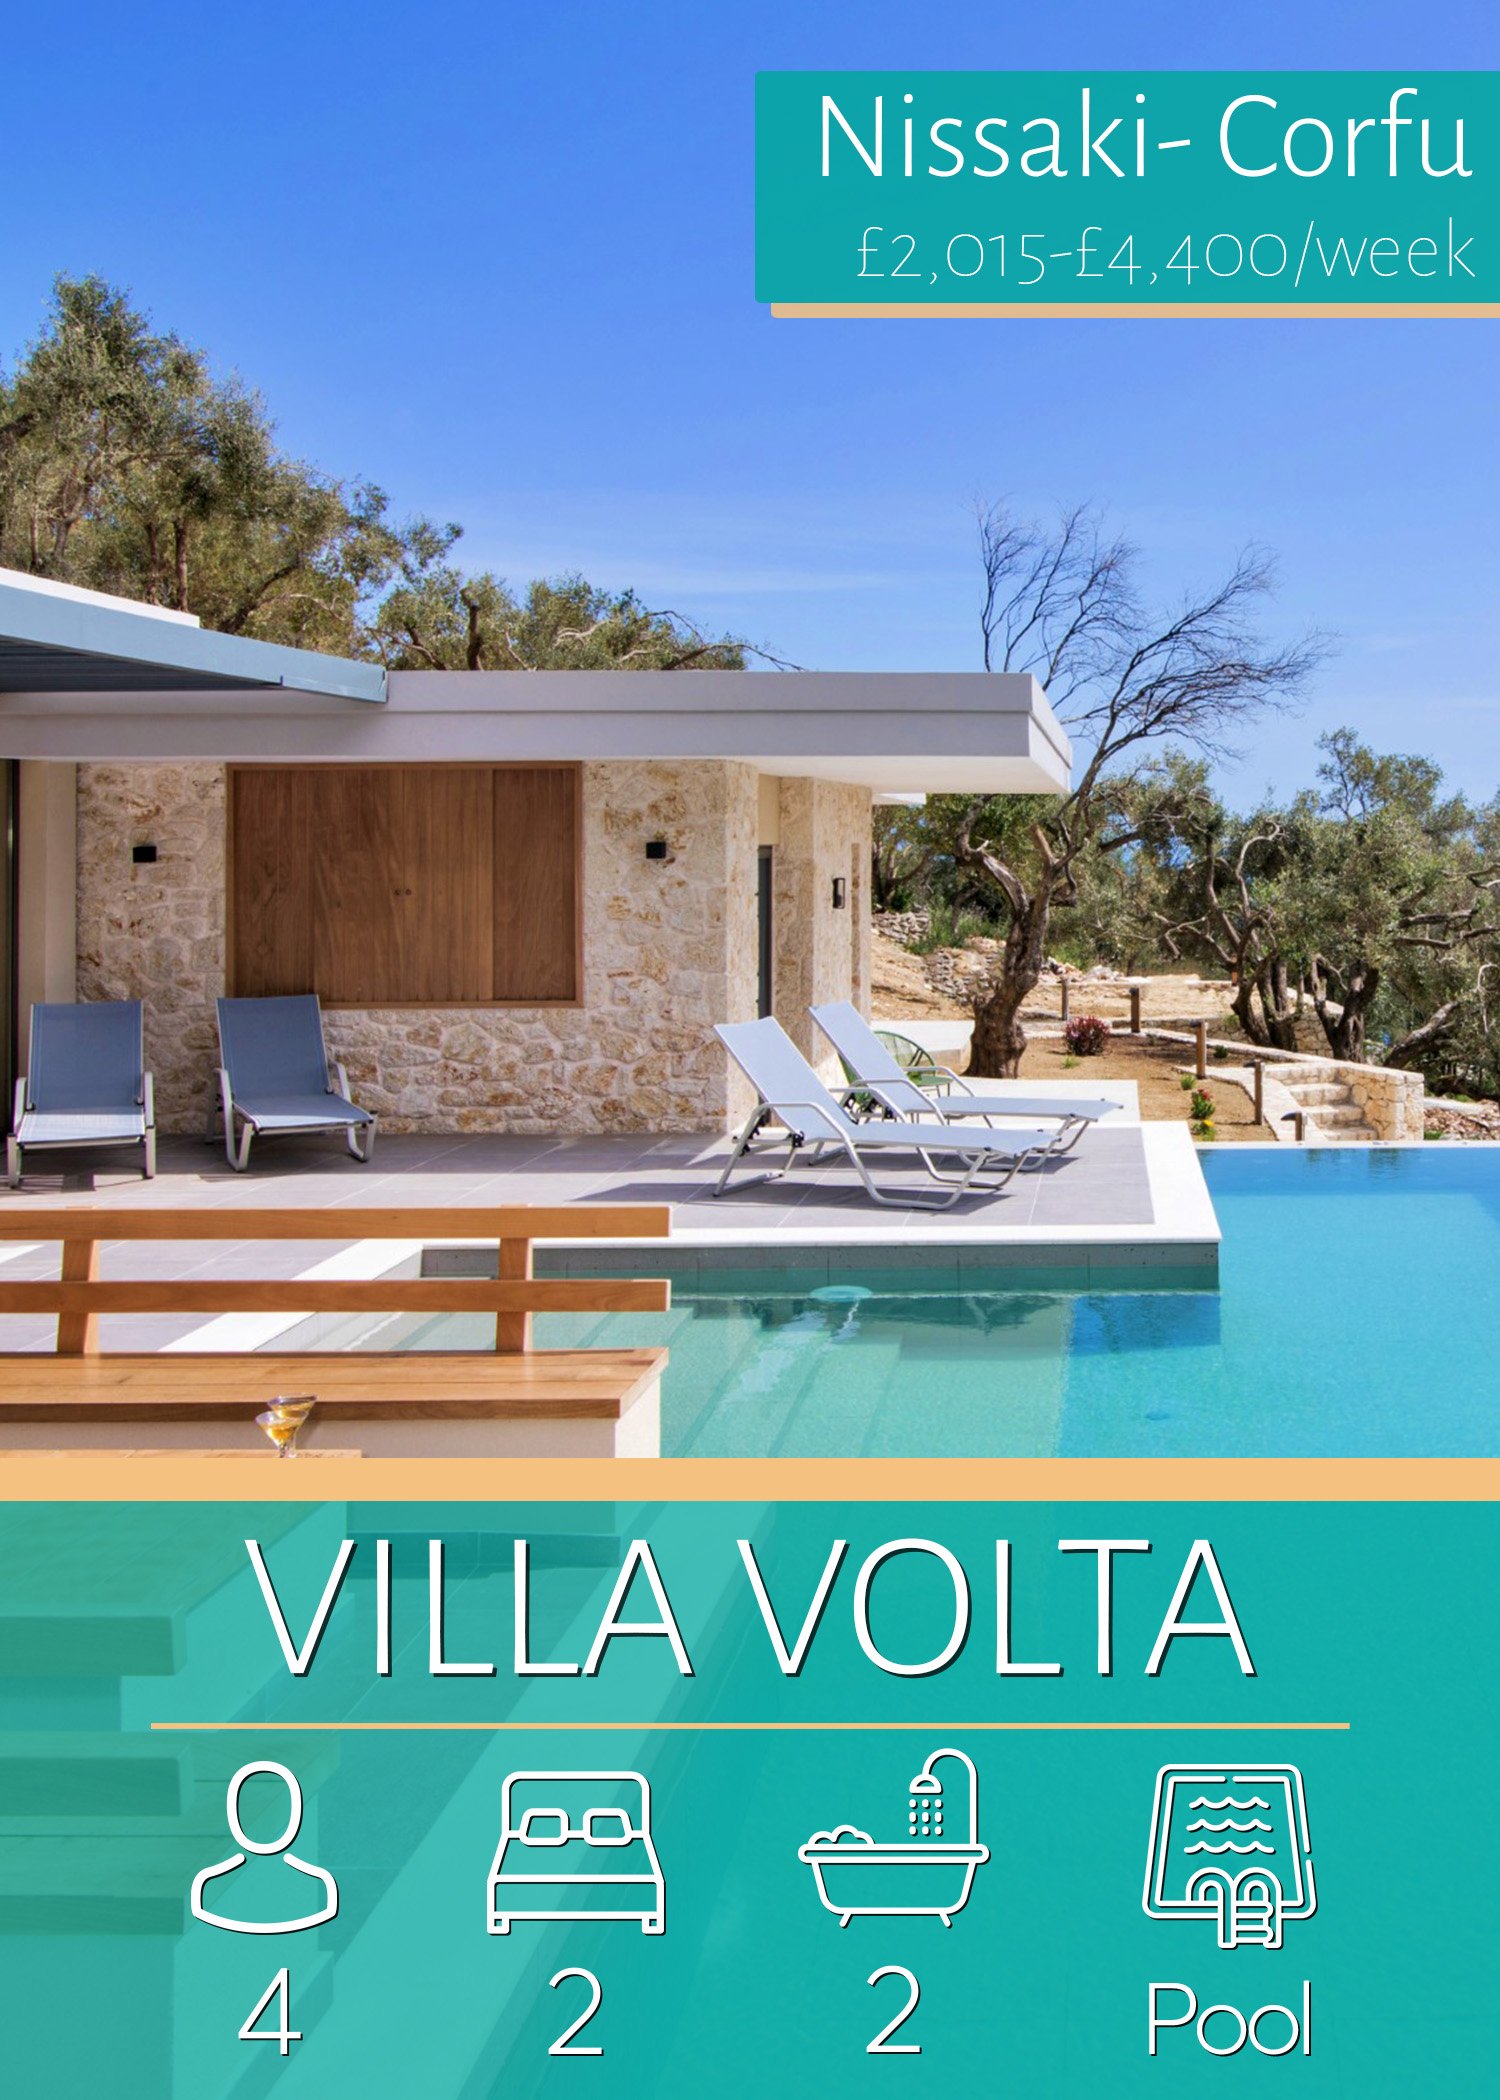 OVR_Villa_Volta.jpg